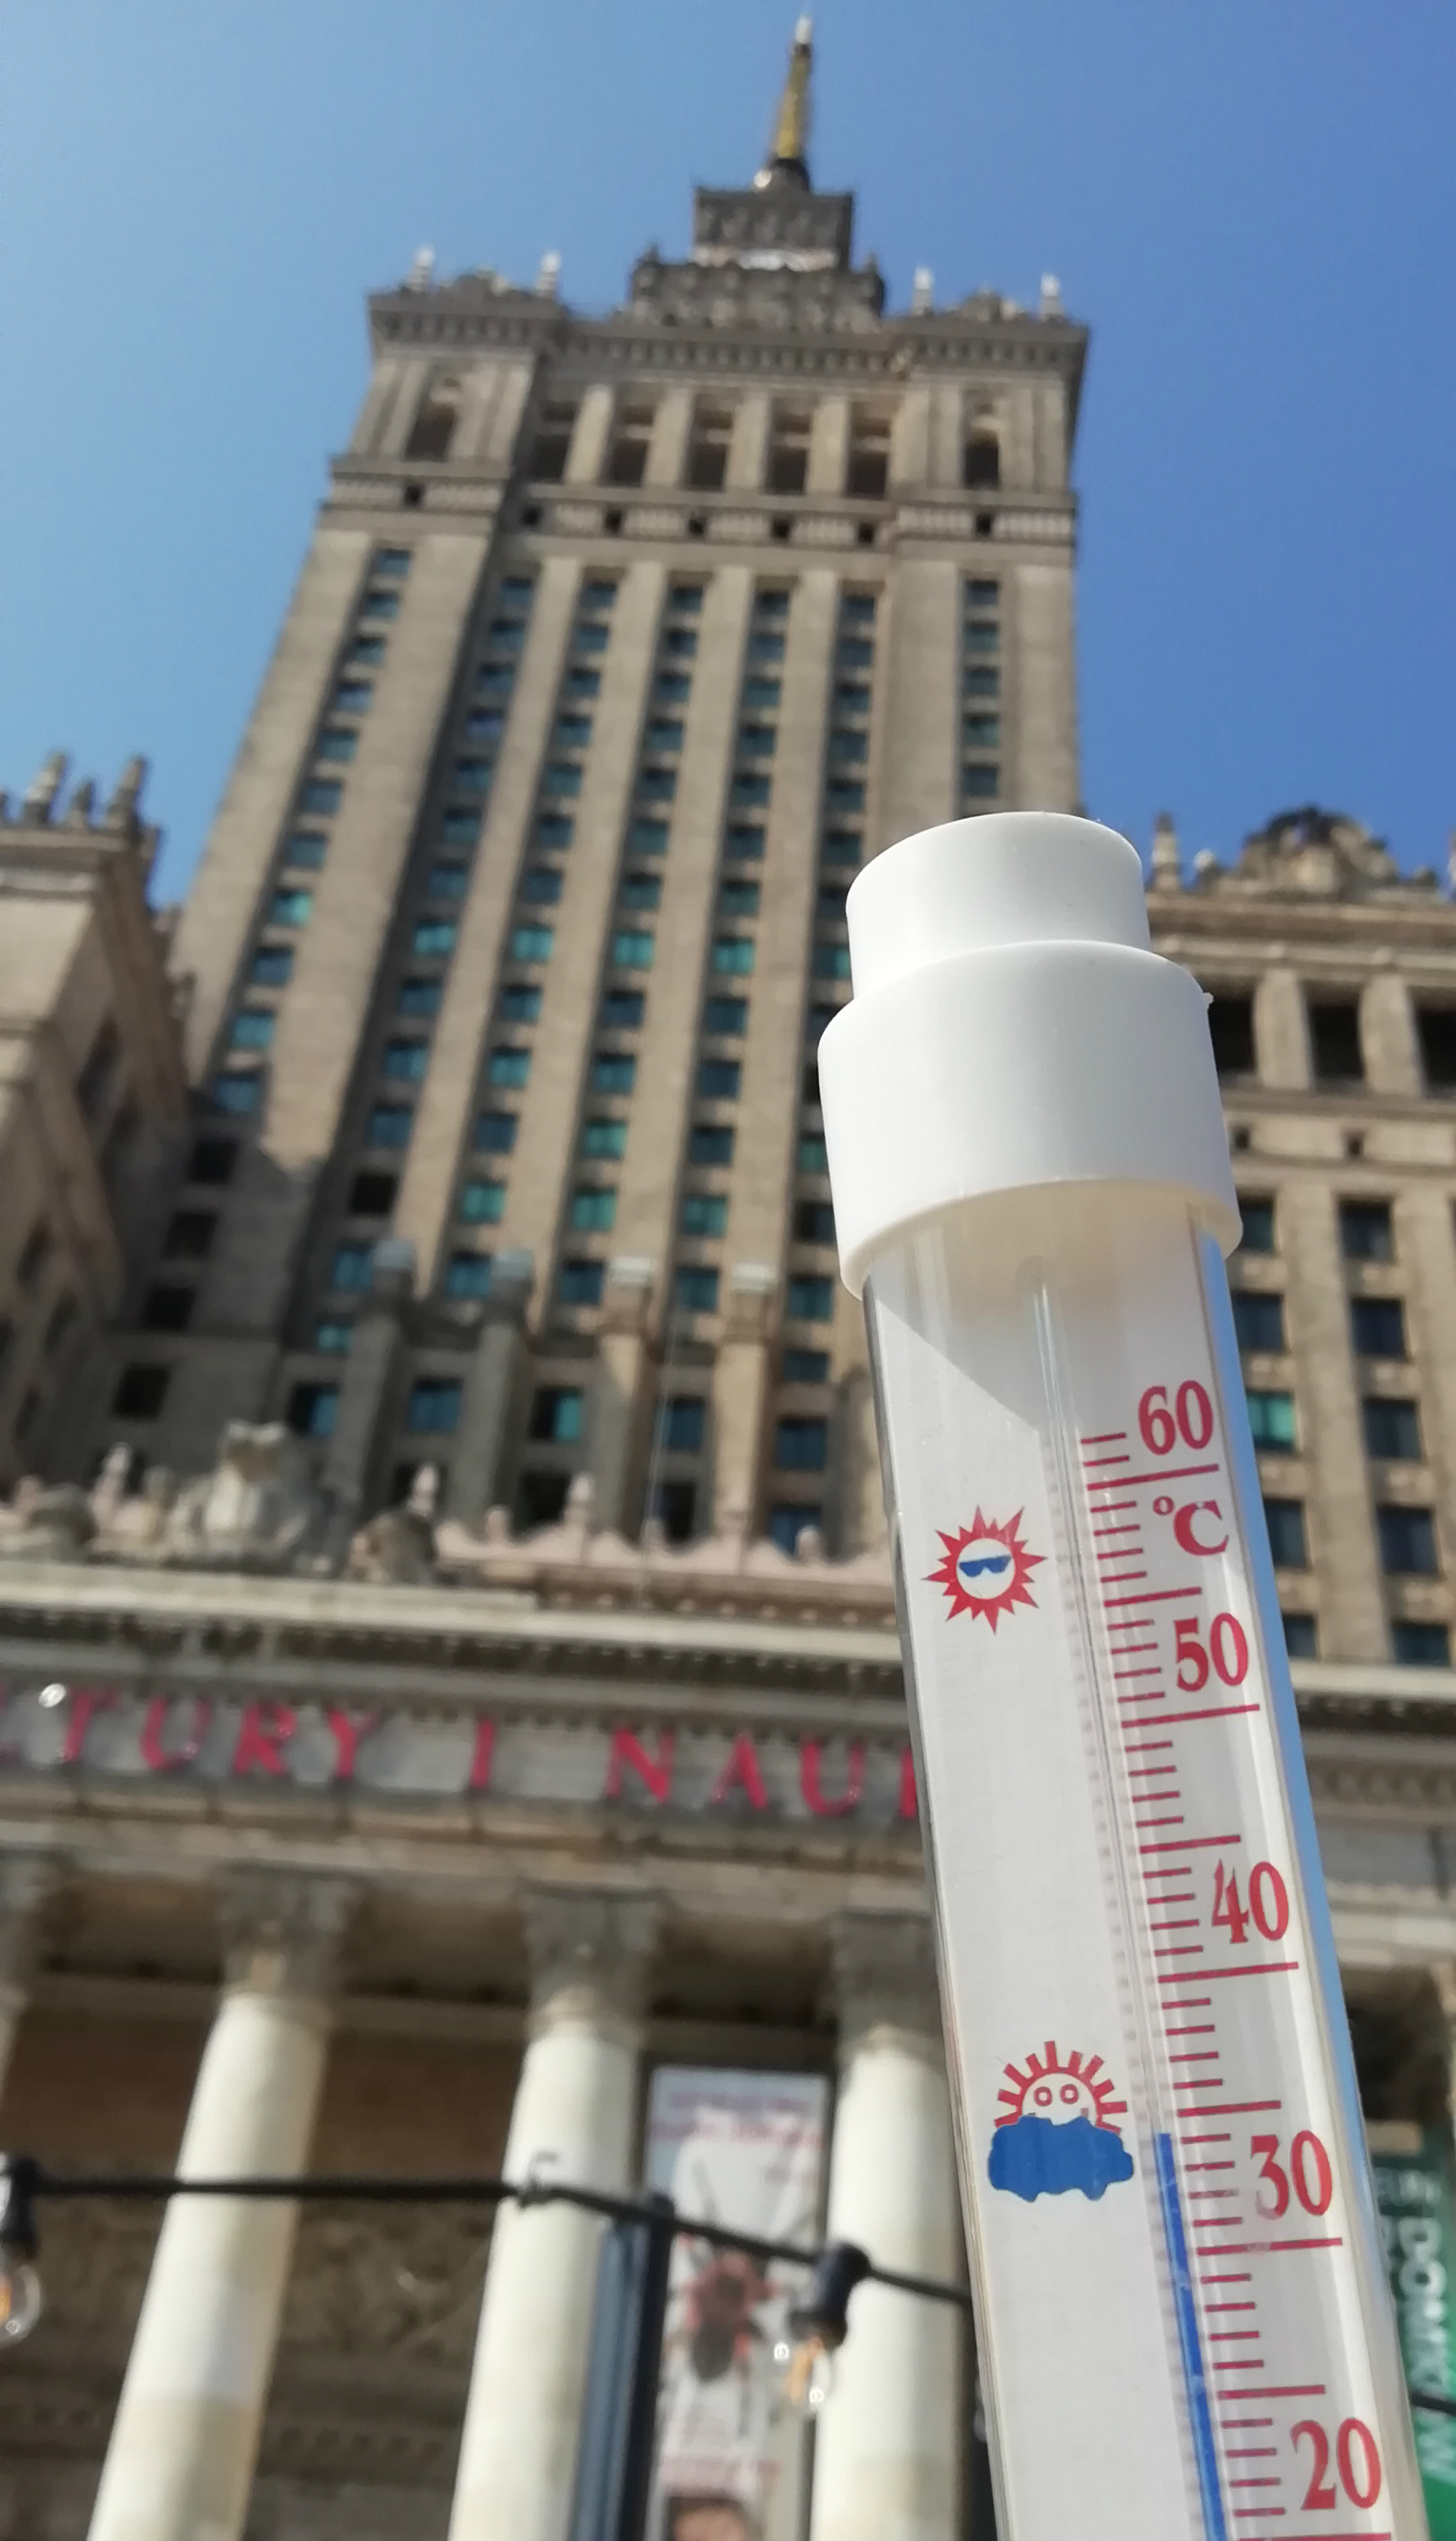 Termometr przed Pałacem Kultury. Słupek wskazuje 35 stopni Celsjusza